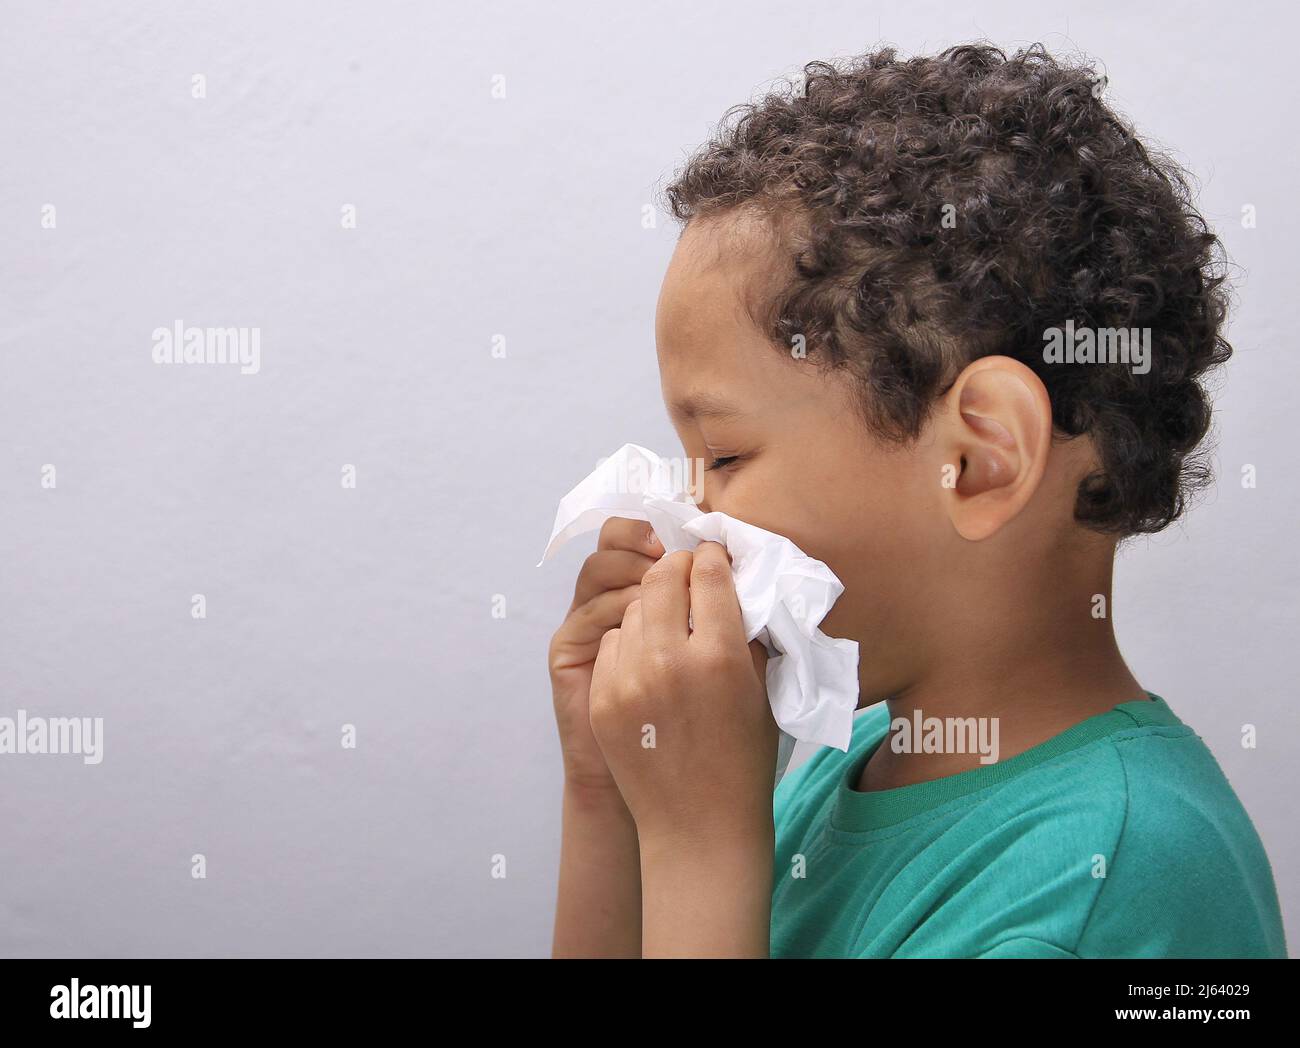 Fangen der Grippe Kind Nase bläst nach einer Erkältung mit grauem Hintergrund mit Menschen Stock Foto Stockfoto